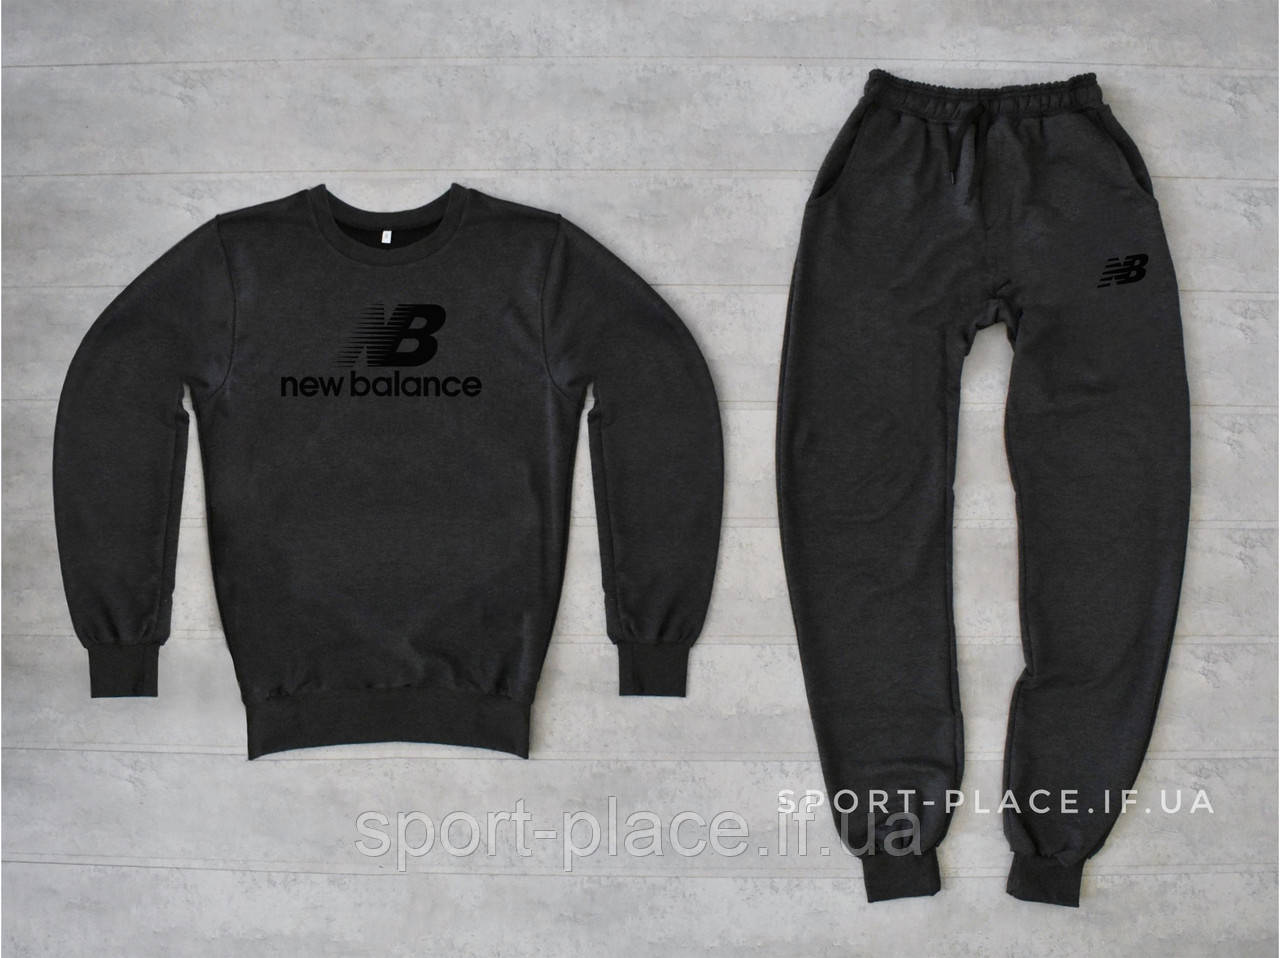 Чоловічий спортивний костюм New Balance (819 Беланс) темно-сірий світшот, штани (толстовка лонгслів худі)